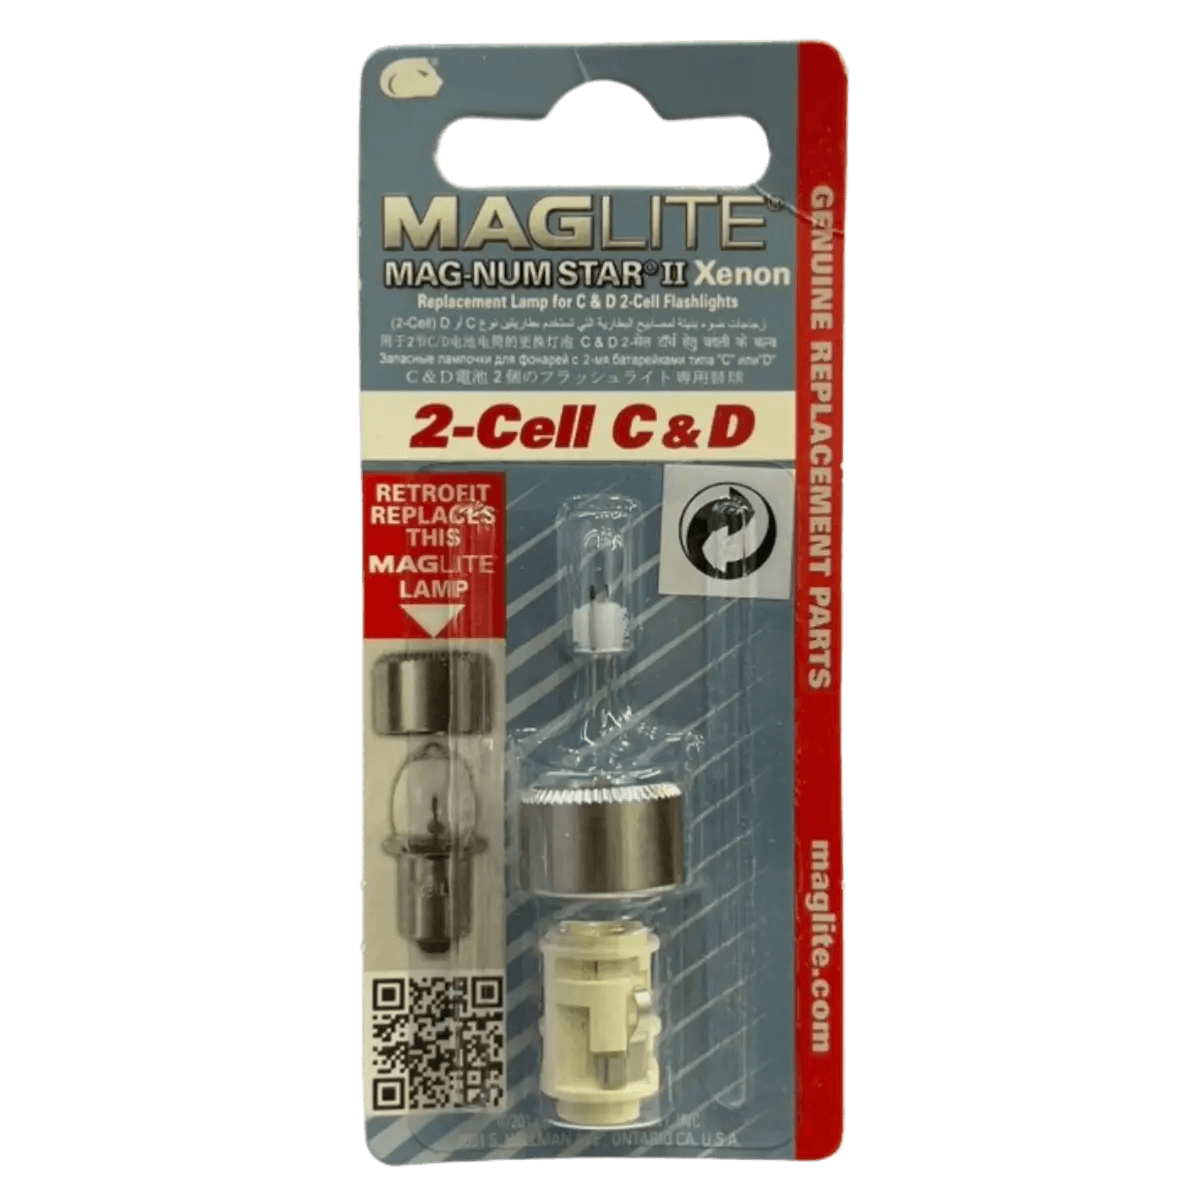 Ampoule 2-Cell C/D Mag-num Star 2 Xenon pour lampe de poche Maglite